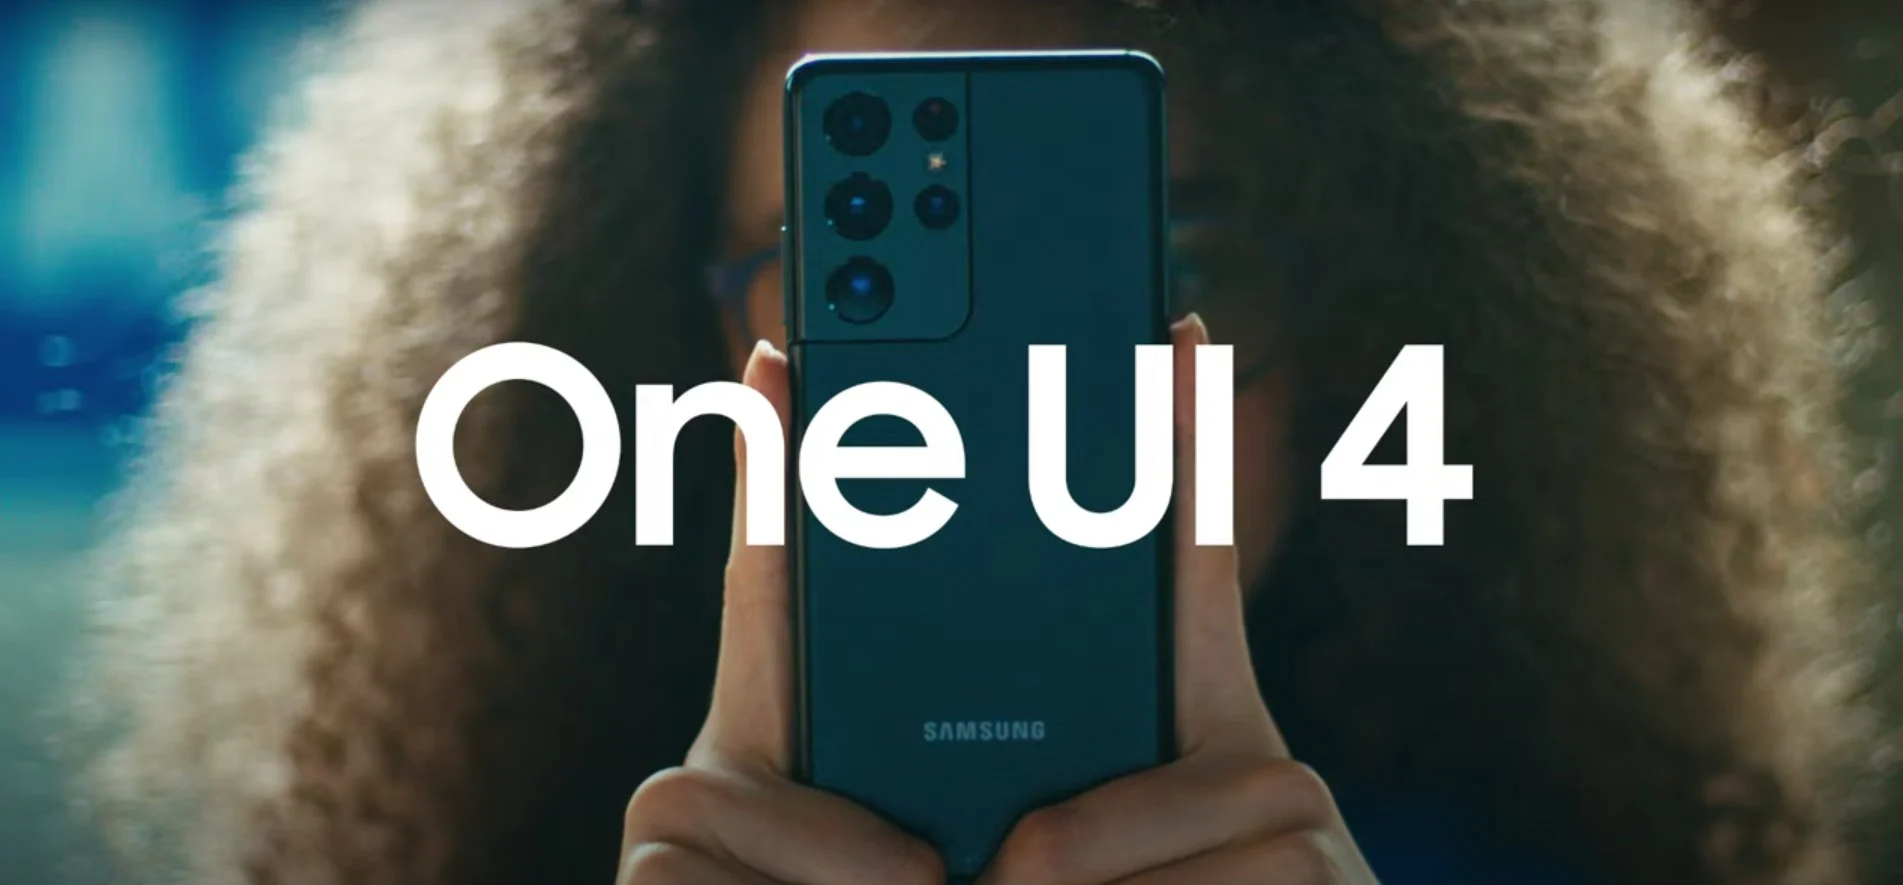 Tres buques insignia de Samsung pronto recibirán el firmware estable One UI 4.0